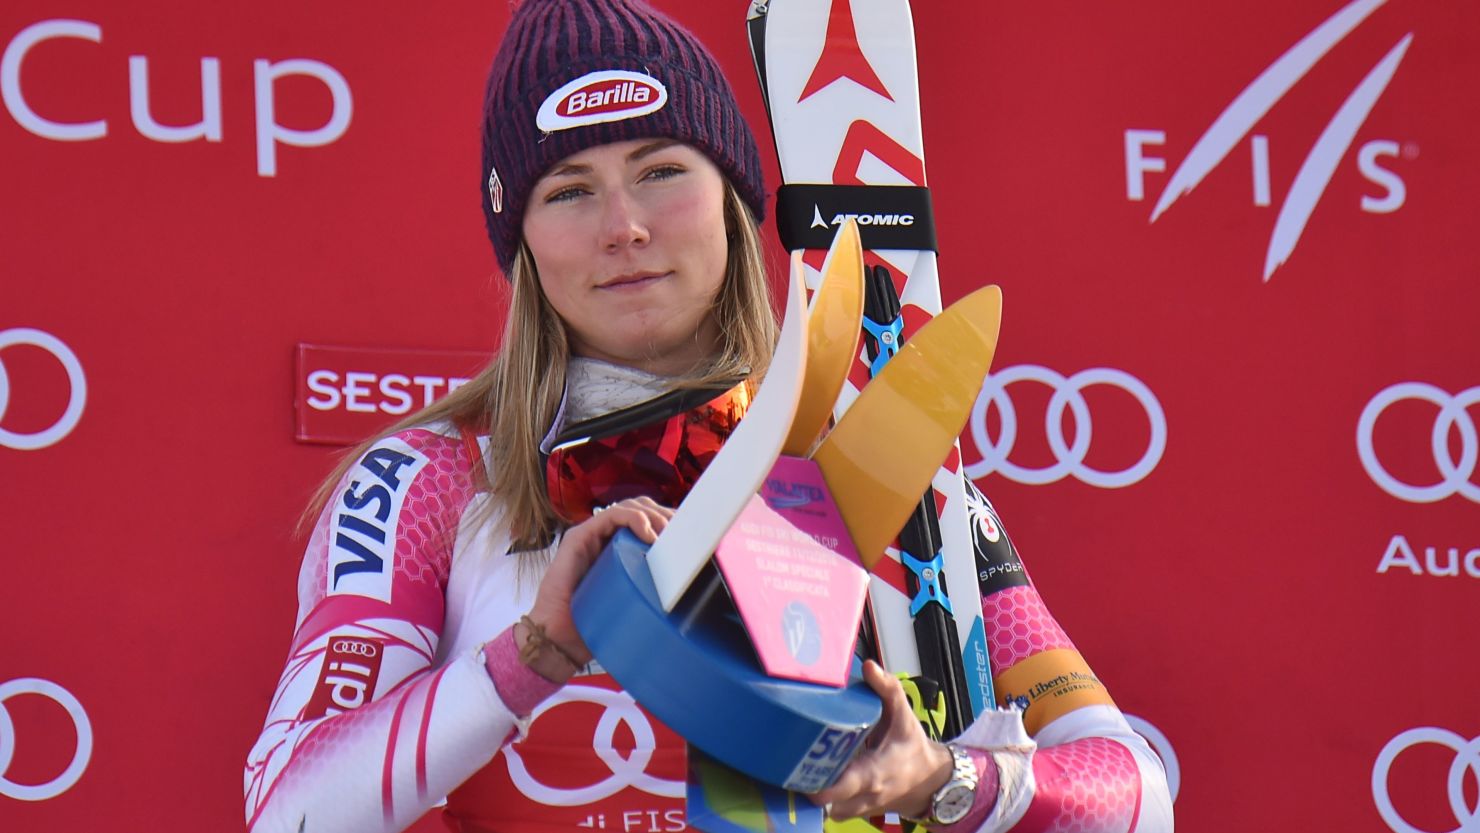 Mikaela Shiffrin celebrates on the podium after winning the women's slalom.